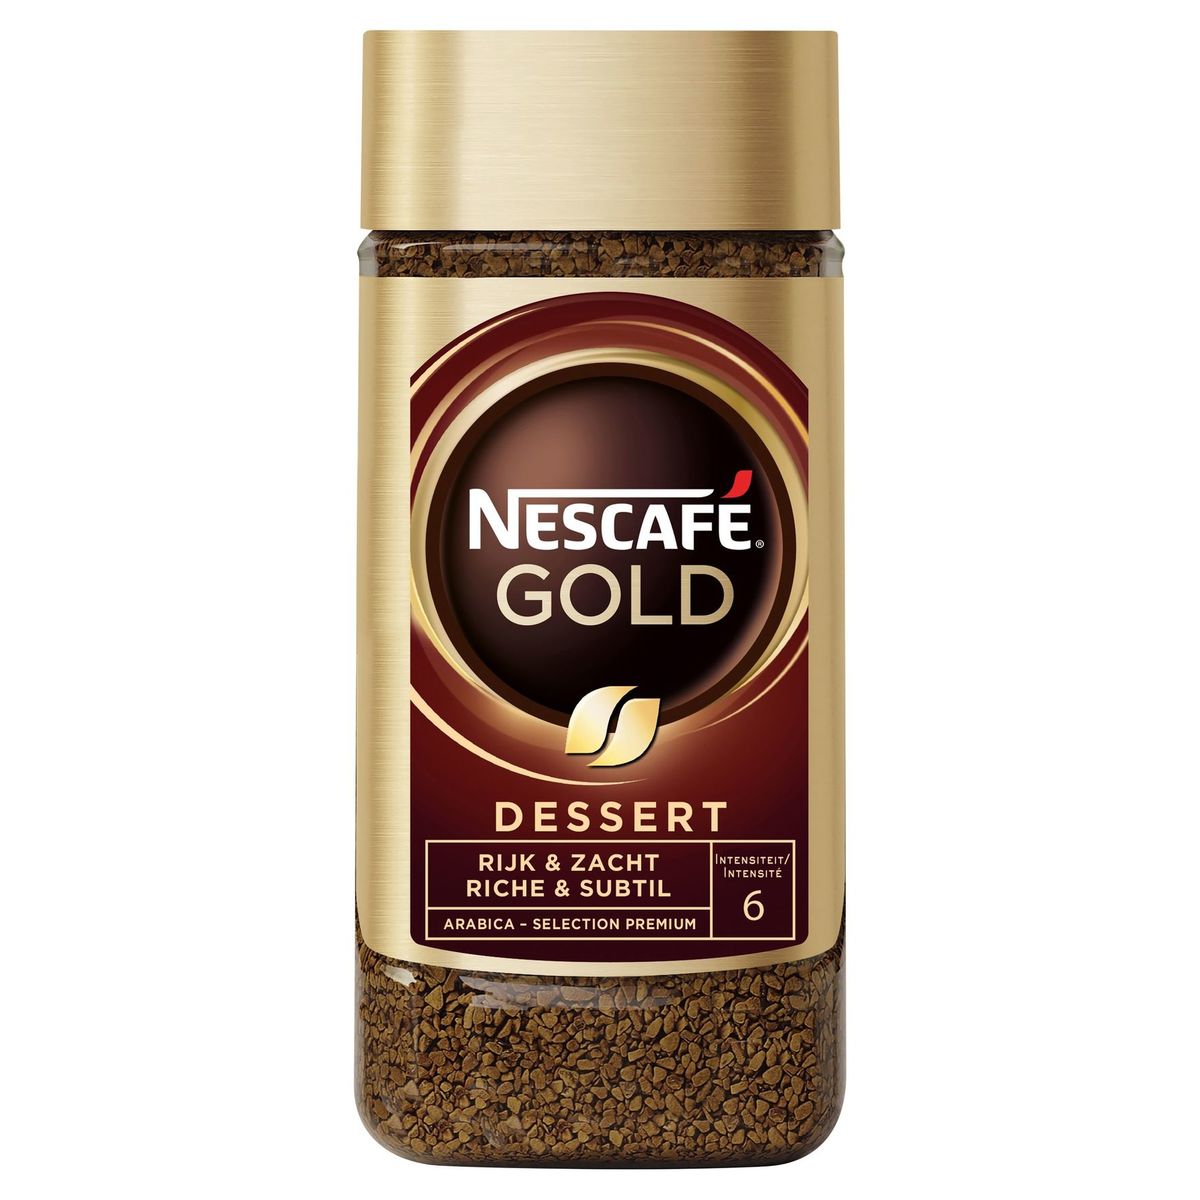 Nescafé Gold Dessert 200 g